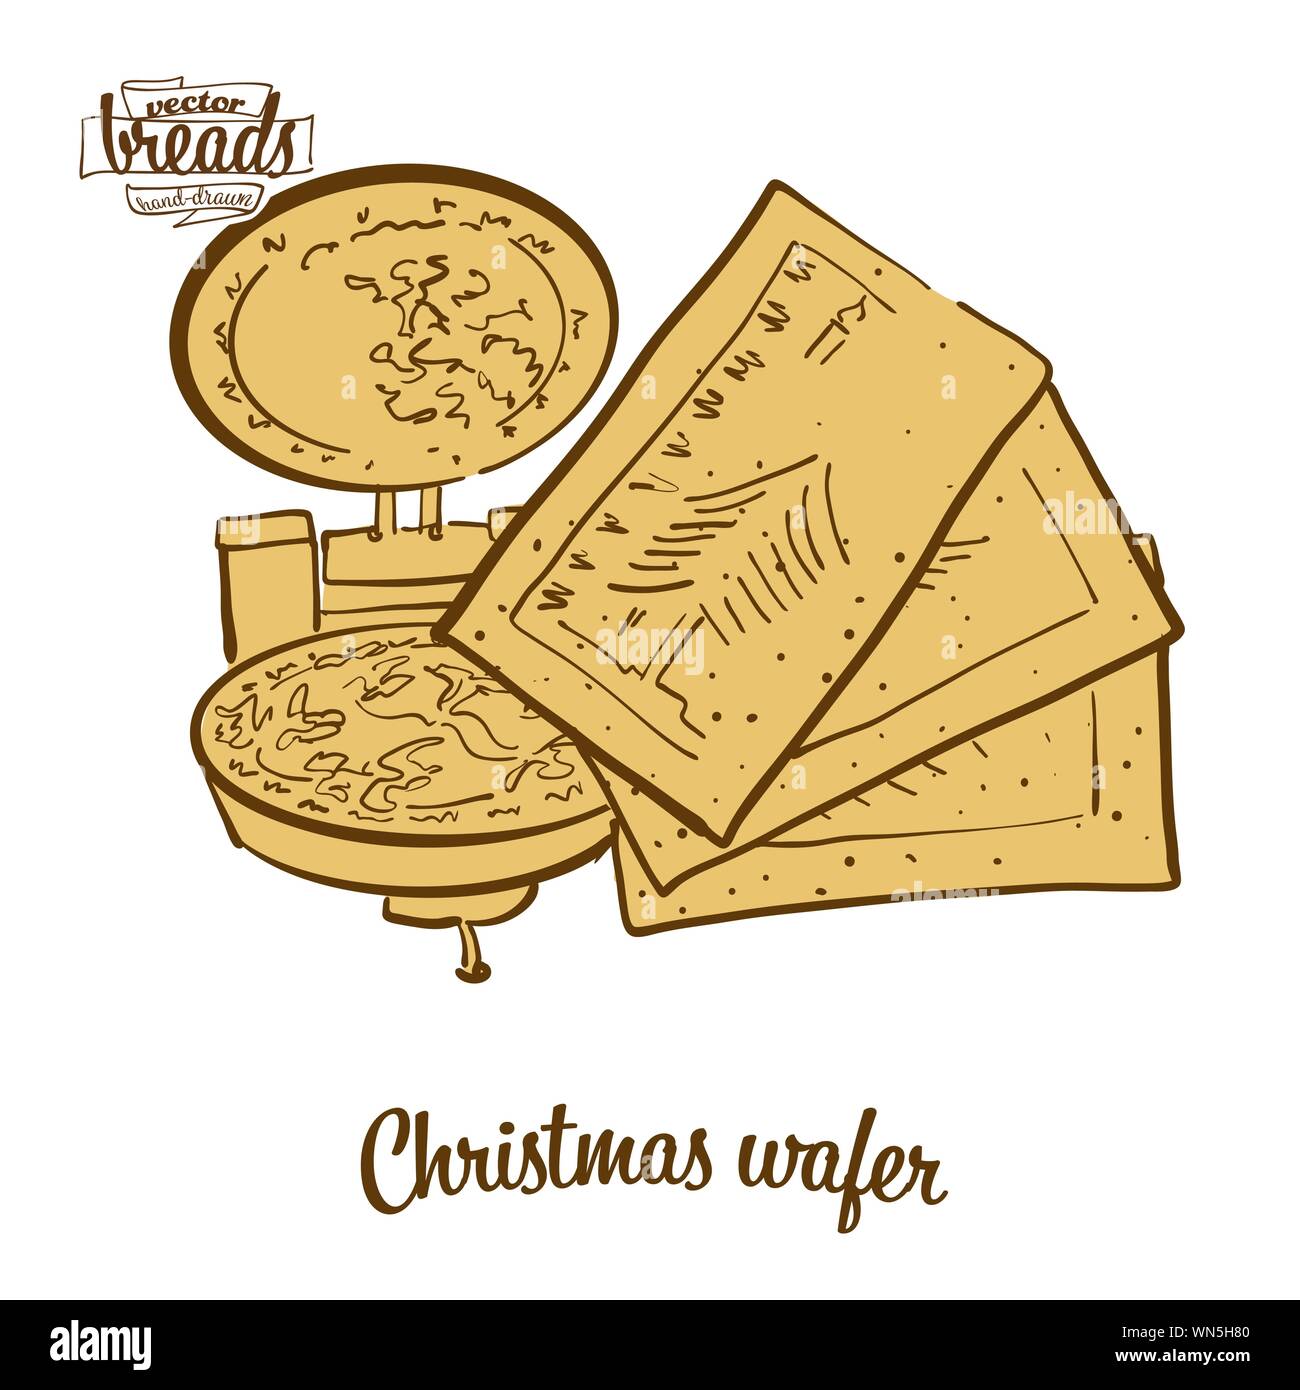 Farbige Zeichnung von Weihnachten wafer Brot. Vector Illustration von knusprigem Brot essen, in der Regel in Osteuropa bekannt. Farbige Brot Skizzen. Stock Vektor